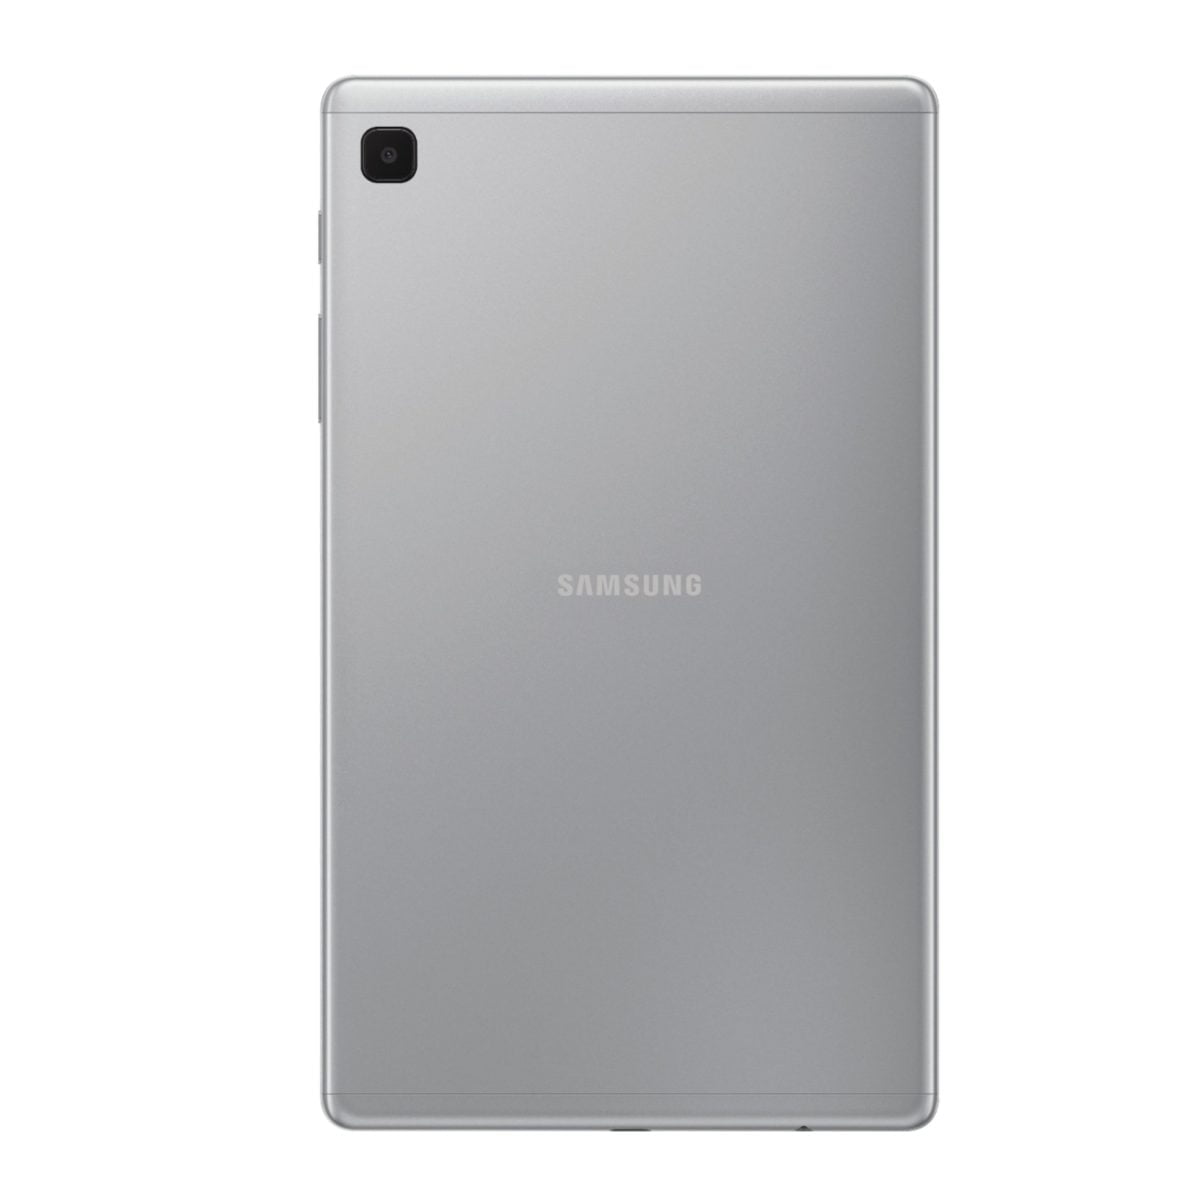 6464588Cv11D Scaled سامسونج &Lt;H1&Gt;سامسونج جالاكسي تاب A7 لايت 32 جيجا بايت - فضي&Lt;/H1&Gt;
تعرف على الجهاز الذي ستحبه عائلتك بأكملها: Samsung Galaxy Tab A7 Lite ، الجهاز اللوحي المصنوع لمشاركته. بفضل شاشته المدمجة مقاس 8.7 بوصات ، يعد Galaxy Tab A7 Lite بحجم مثالي للترفيه أثناء التنقل. تم تصميم إطاره المعدني القوي ليتم إحضاره من غرفة المعيشة إلى عطلتك الشاطئية ، أو أينما تريد أن تأخذه. يأتي Galaxy Tab A7 Lite مزودا بإمكانية الوصول إلى ساعات من Youtube Premium و Samsung Tv الخالي من الإعلانات دون أي رسوم إضافية حتى تتمكن من إبقاء العائلة سعيدة دون انقطاع مزعج. بالإضافة إلى ذلك ، مع معالج قوي للبث السريع والكثير من التخزين لملفاتك المفضلة ، يبسط Galaxy Tab A7 Lite احتياجات الترفيه للجميع تحت سقفك. سامسونج جالاكسي تاب سامسونج جالاكسي تاب A7 لايت 32 جيجا بايت واي فاي - فضي